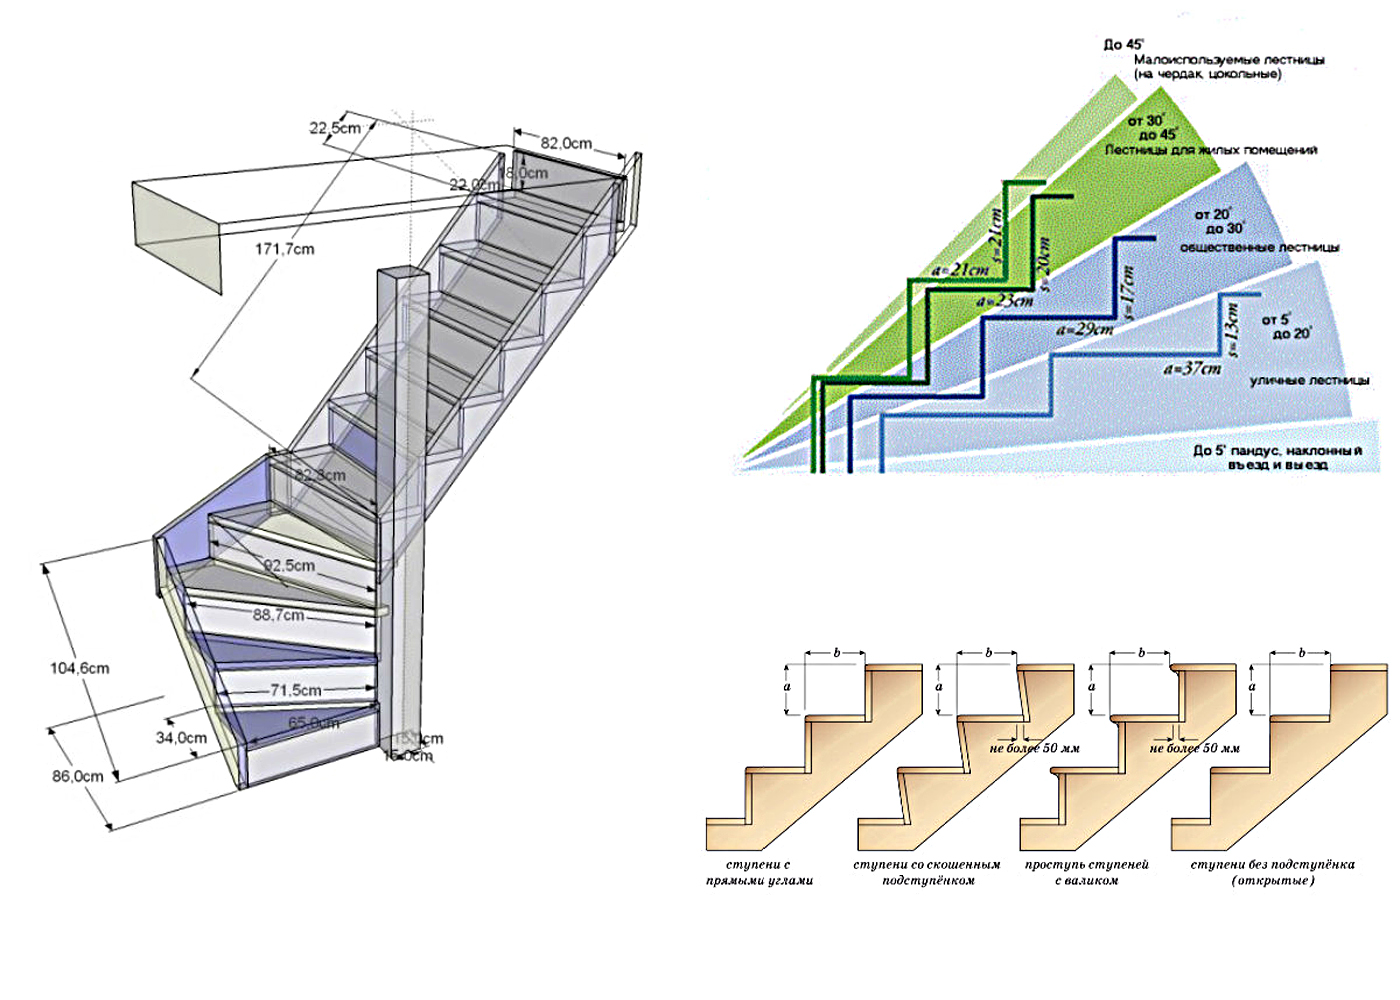 22 этаж какая высота. Как правильно рассчитать лестницу на 2 этаж. Ступени в лестницы 200 мм ширина. Маршевая лестница 60 гр шаг ступеней. Как рассчитать Размеры лестницы на 2 этаж.